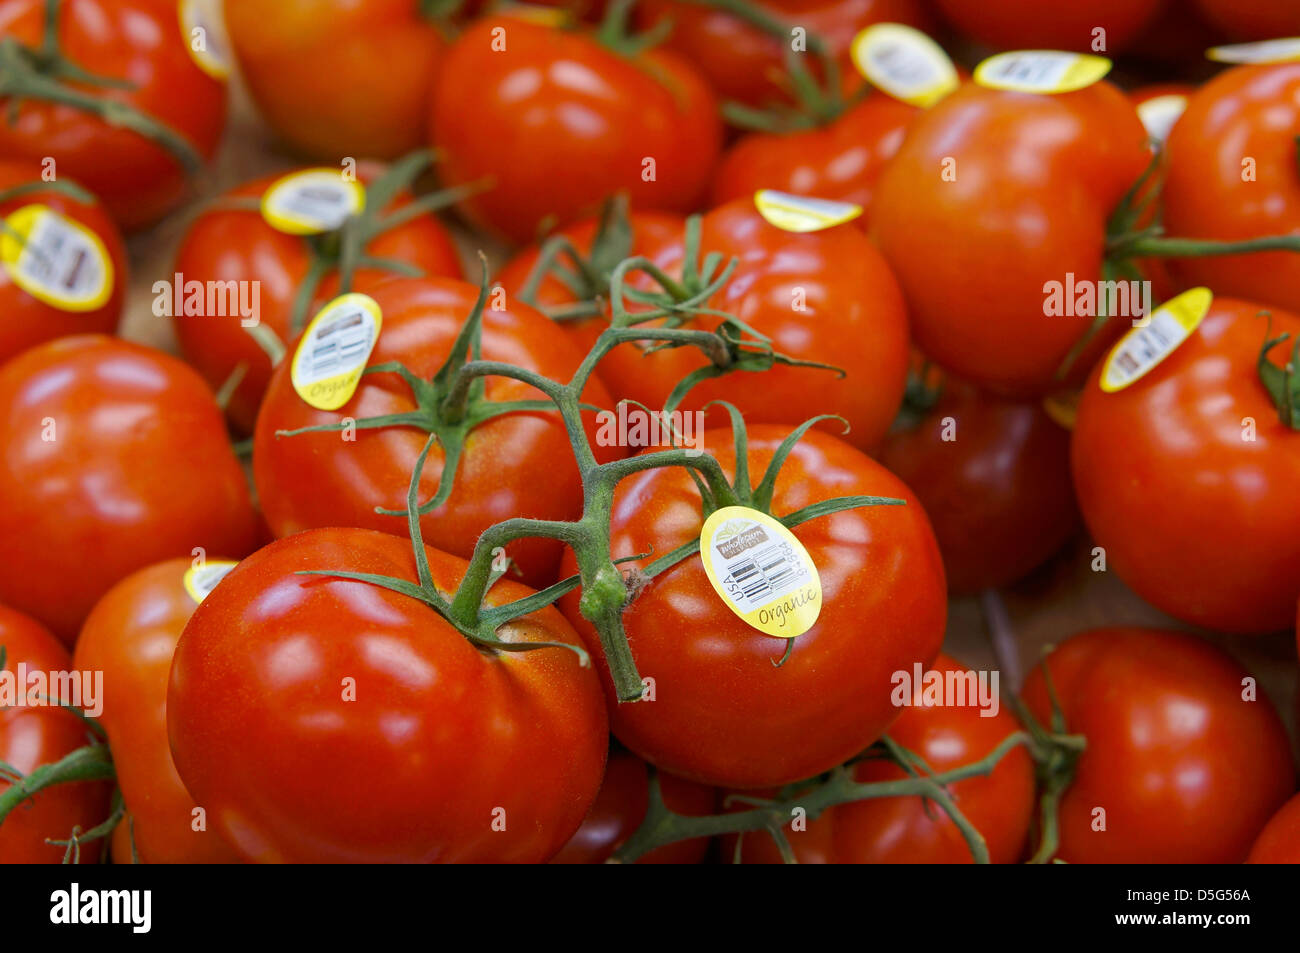 Vid tomates orgánicos con etiquetas Foto de stock